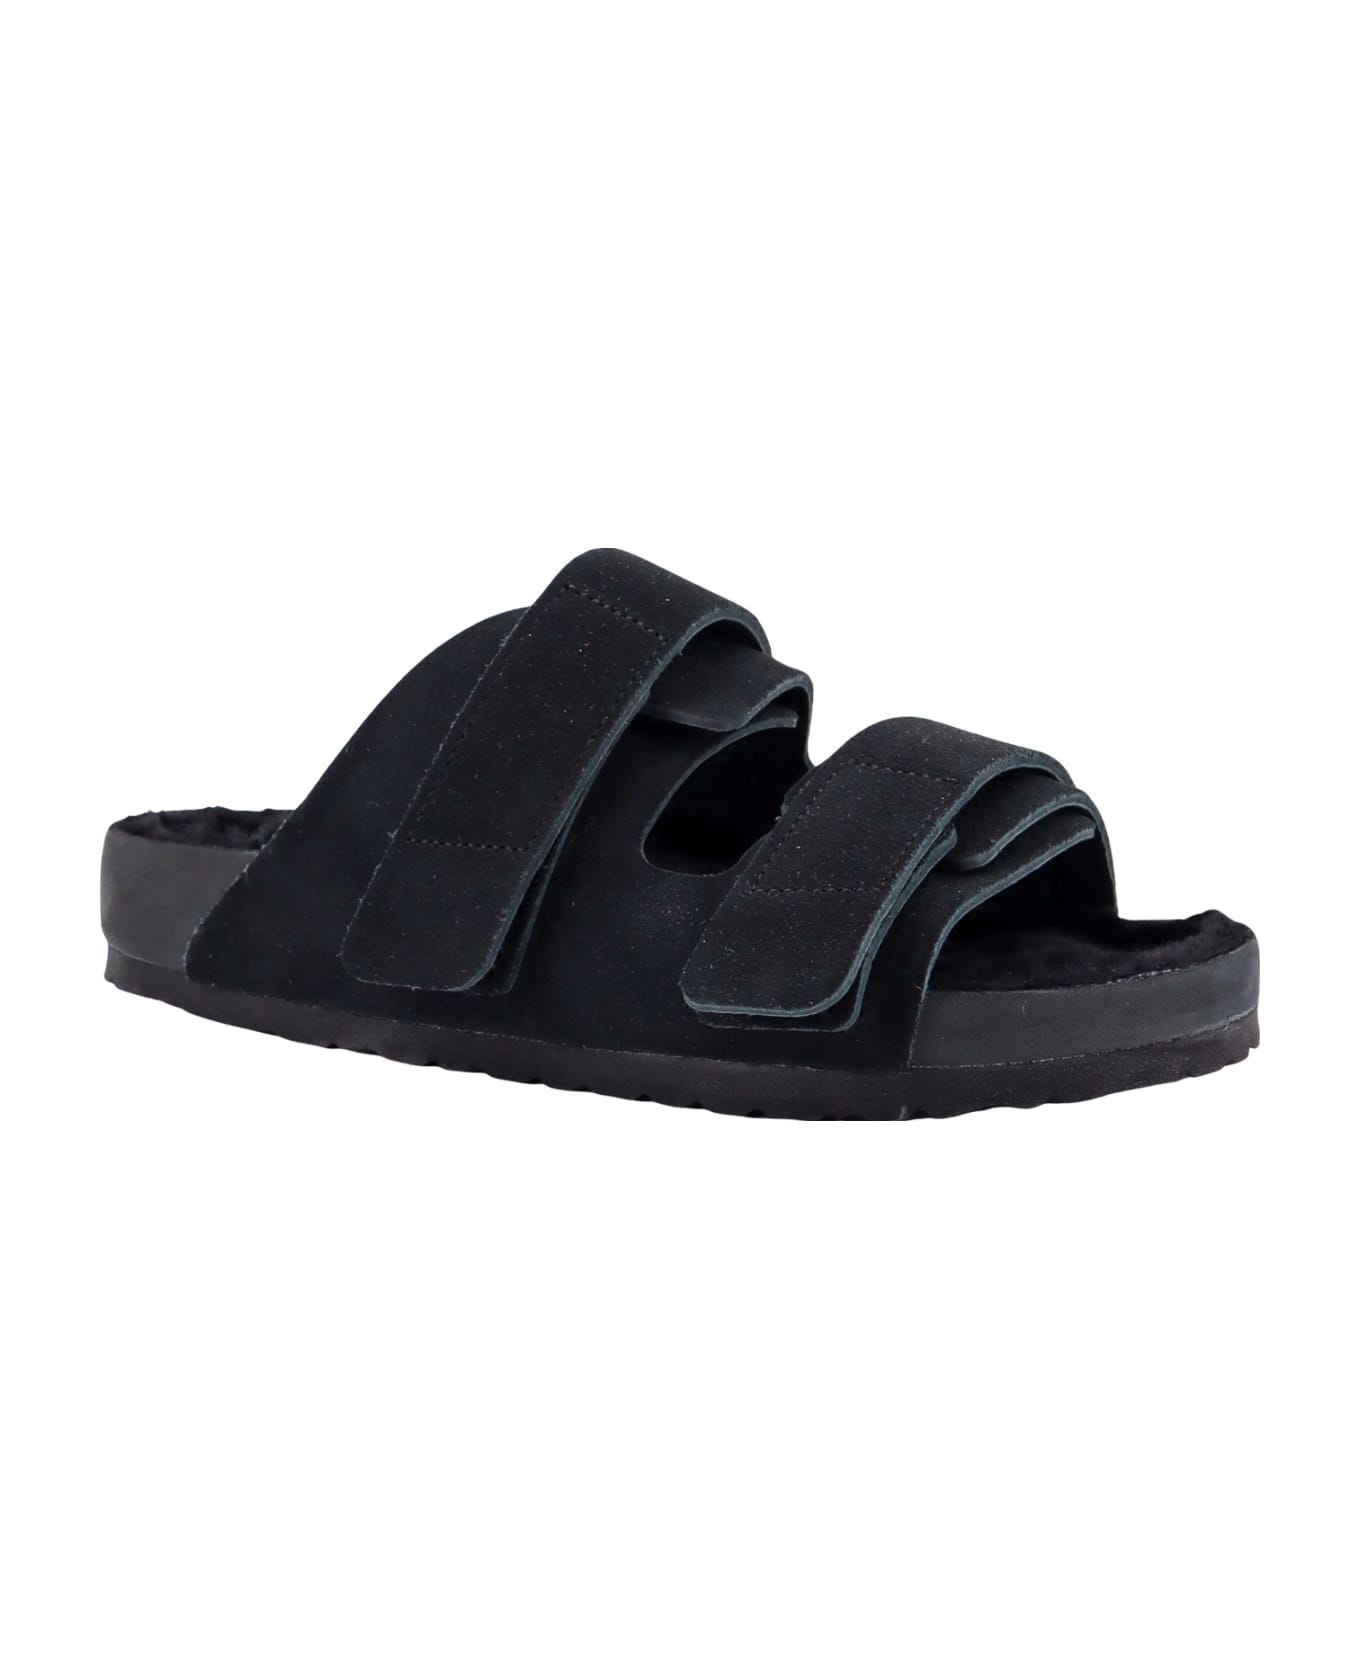 Birkenstock Uji Sandals - Black